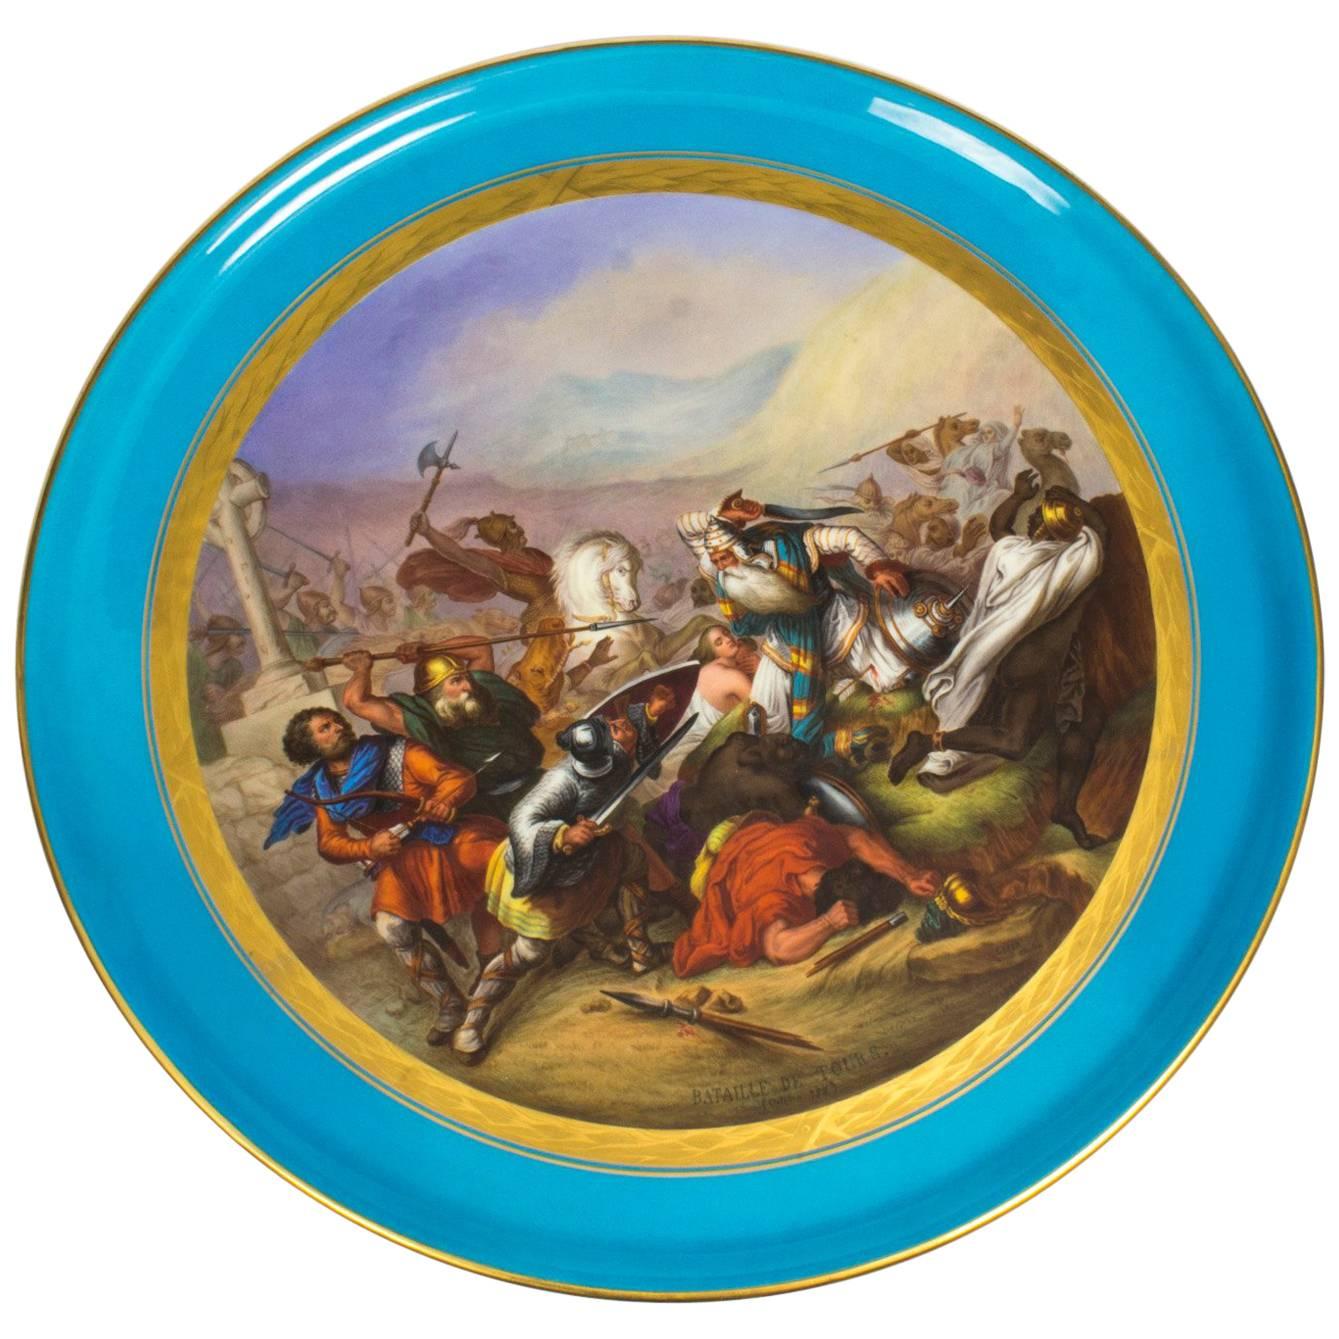 Antique Sevres Porcelain Plaque of the Bataille De Tours, 18th Century